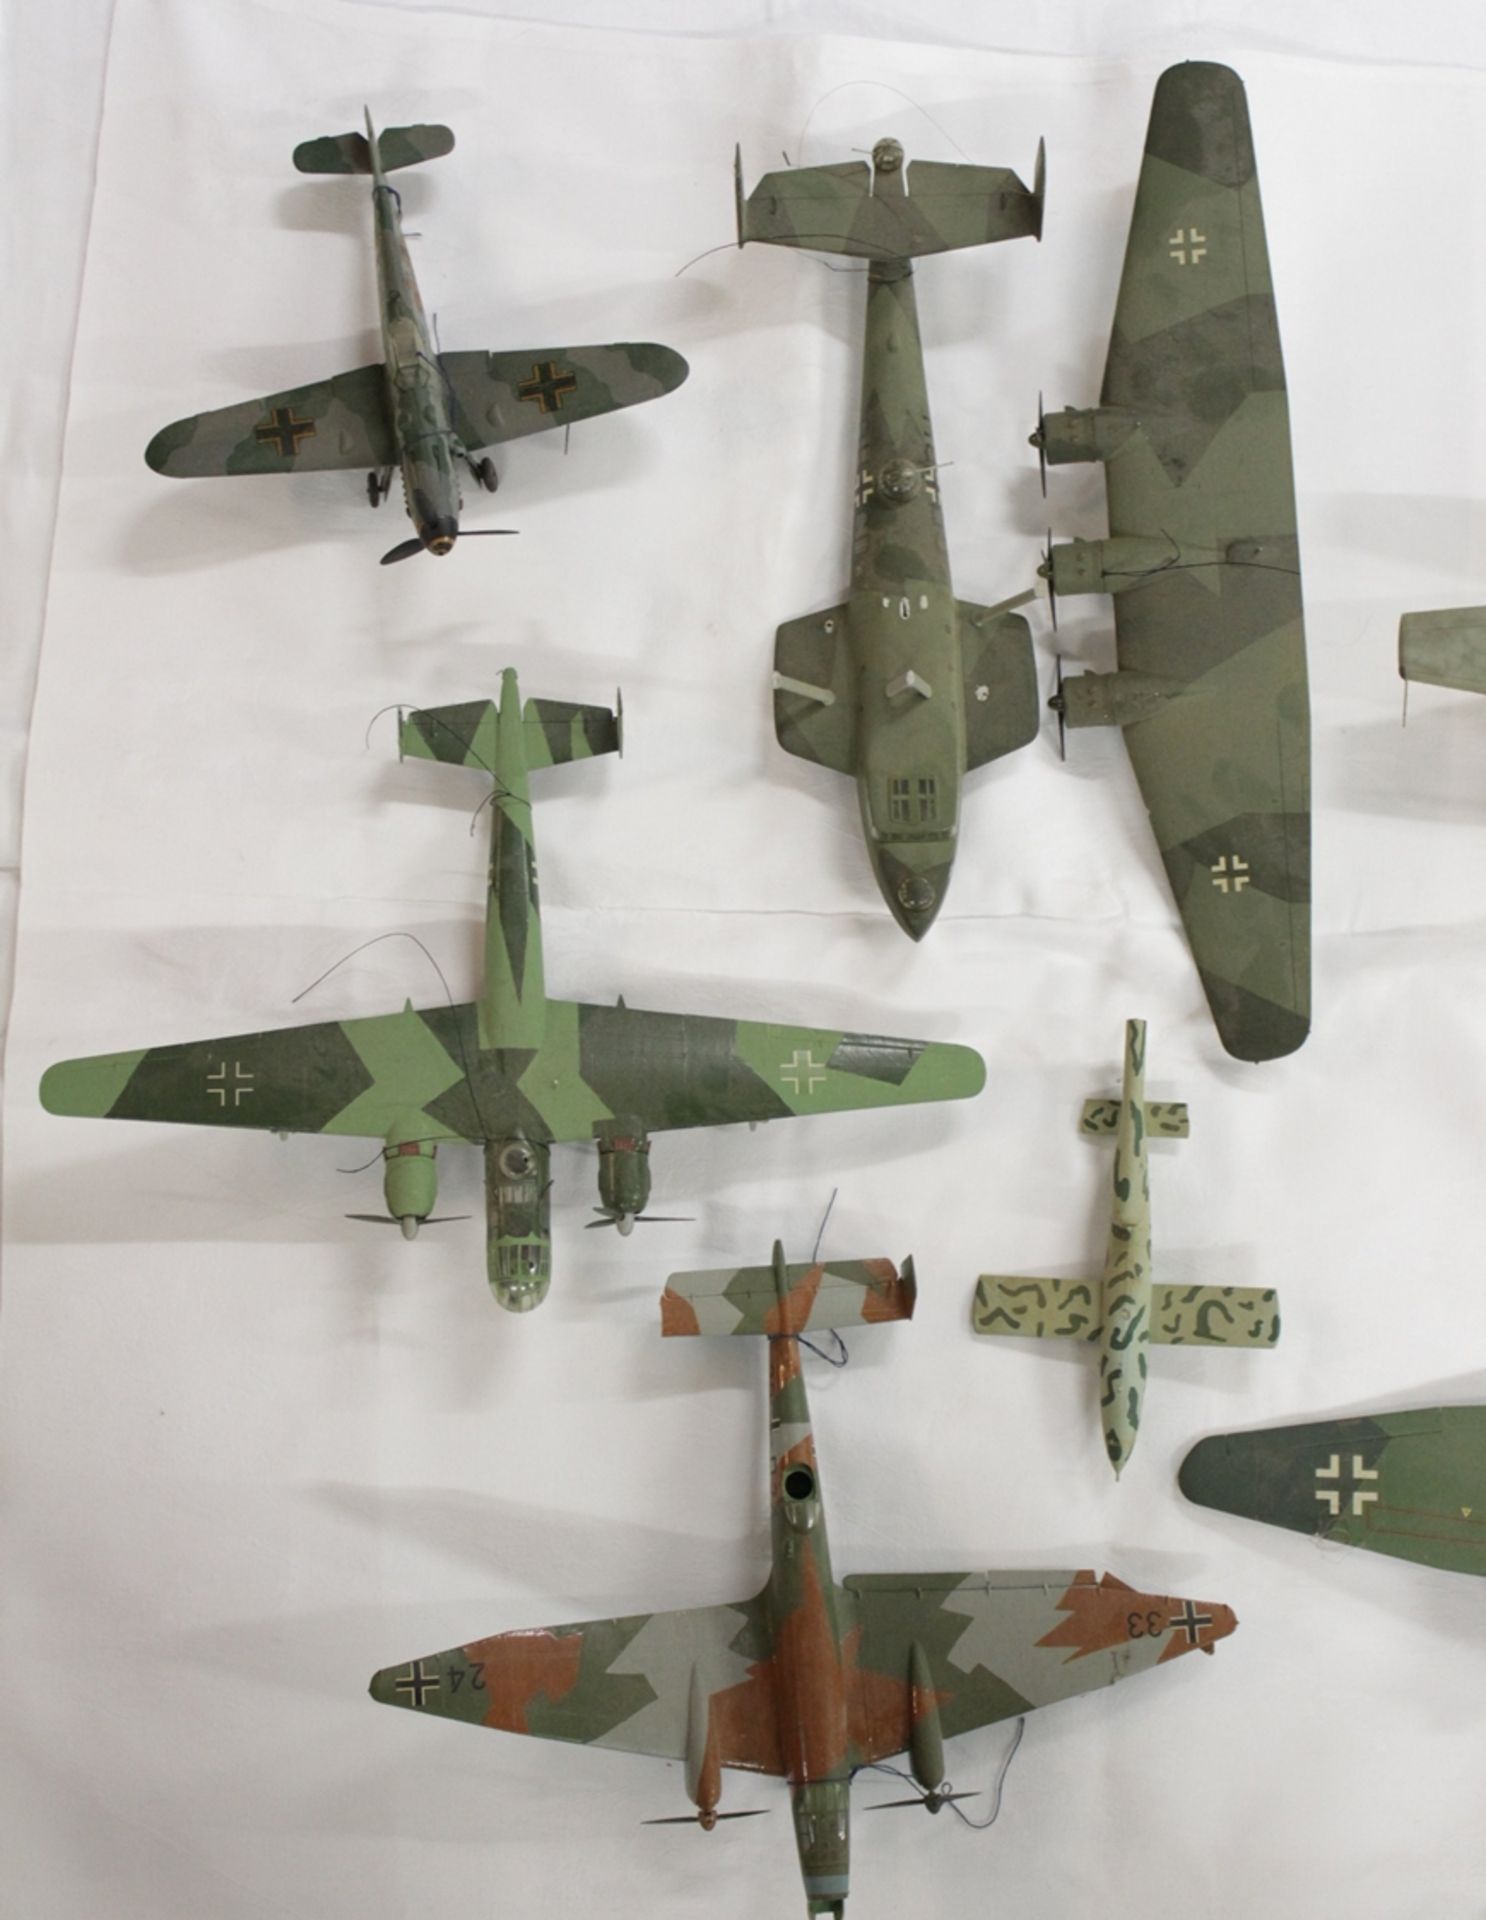 Konvolut div. Modell-Flugzeuge, meist mit Beschädigung (Teile lose, abgebrochen etc.), Vollständigk